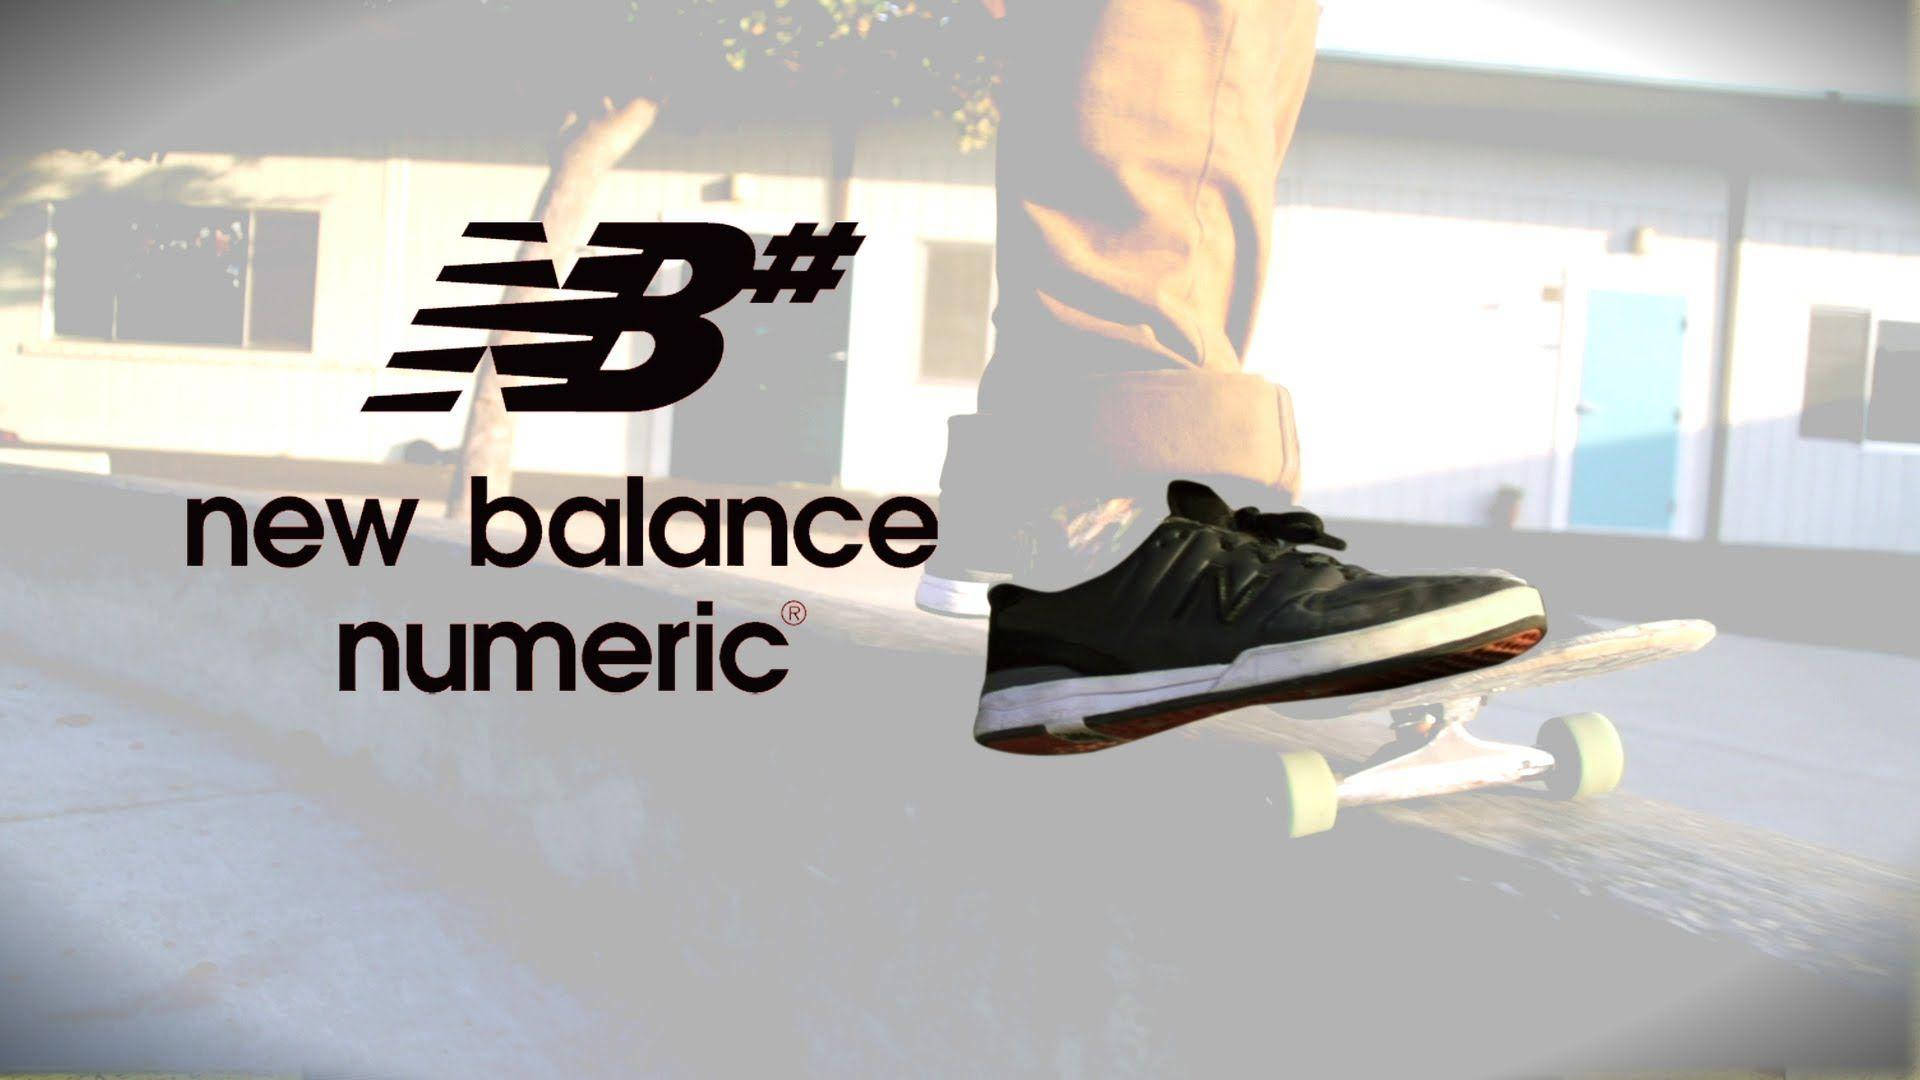 Caption: New Balance Numeric Black Skateboarding Shoes Background